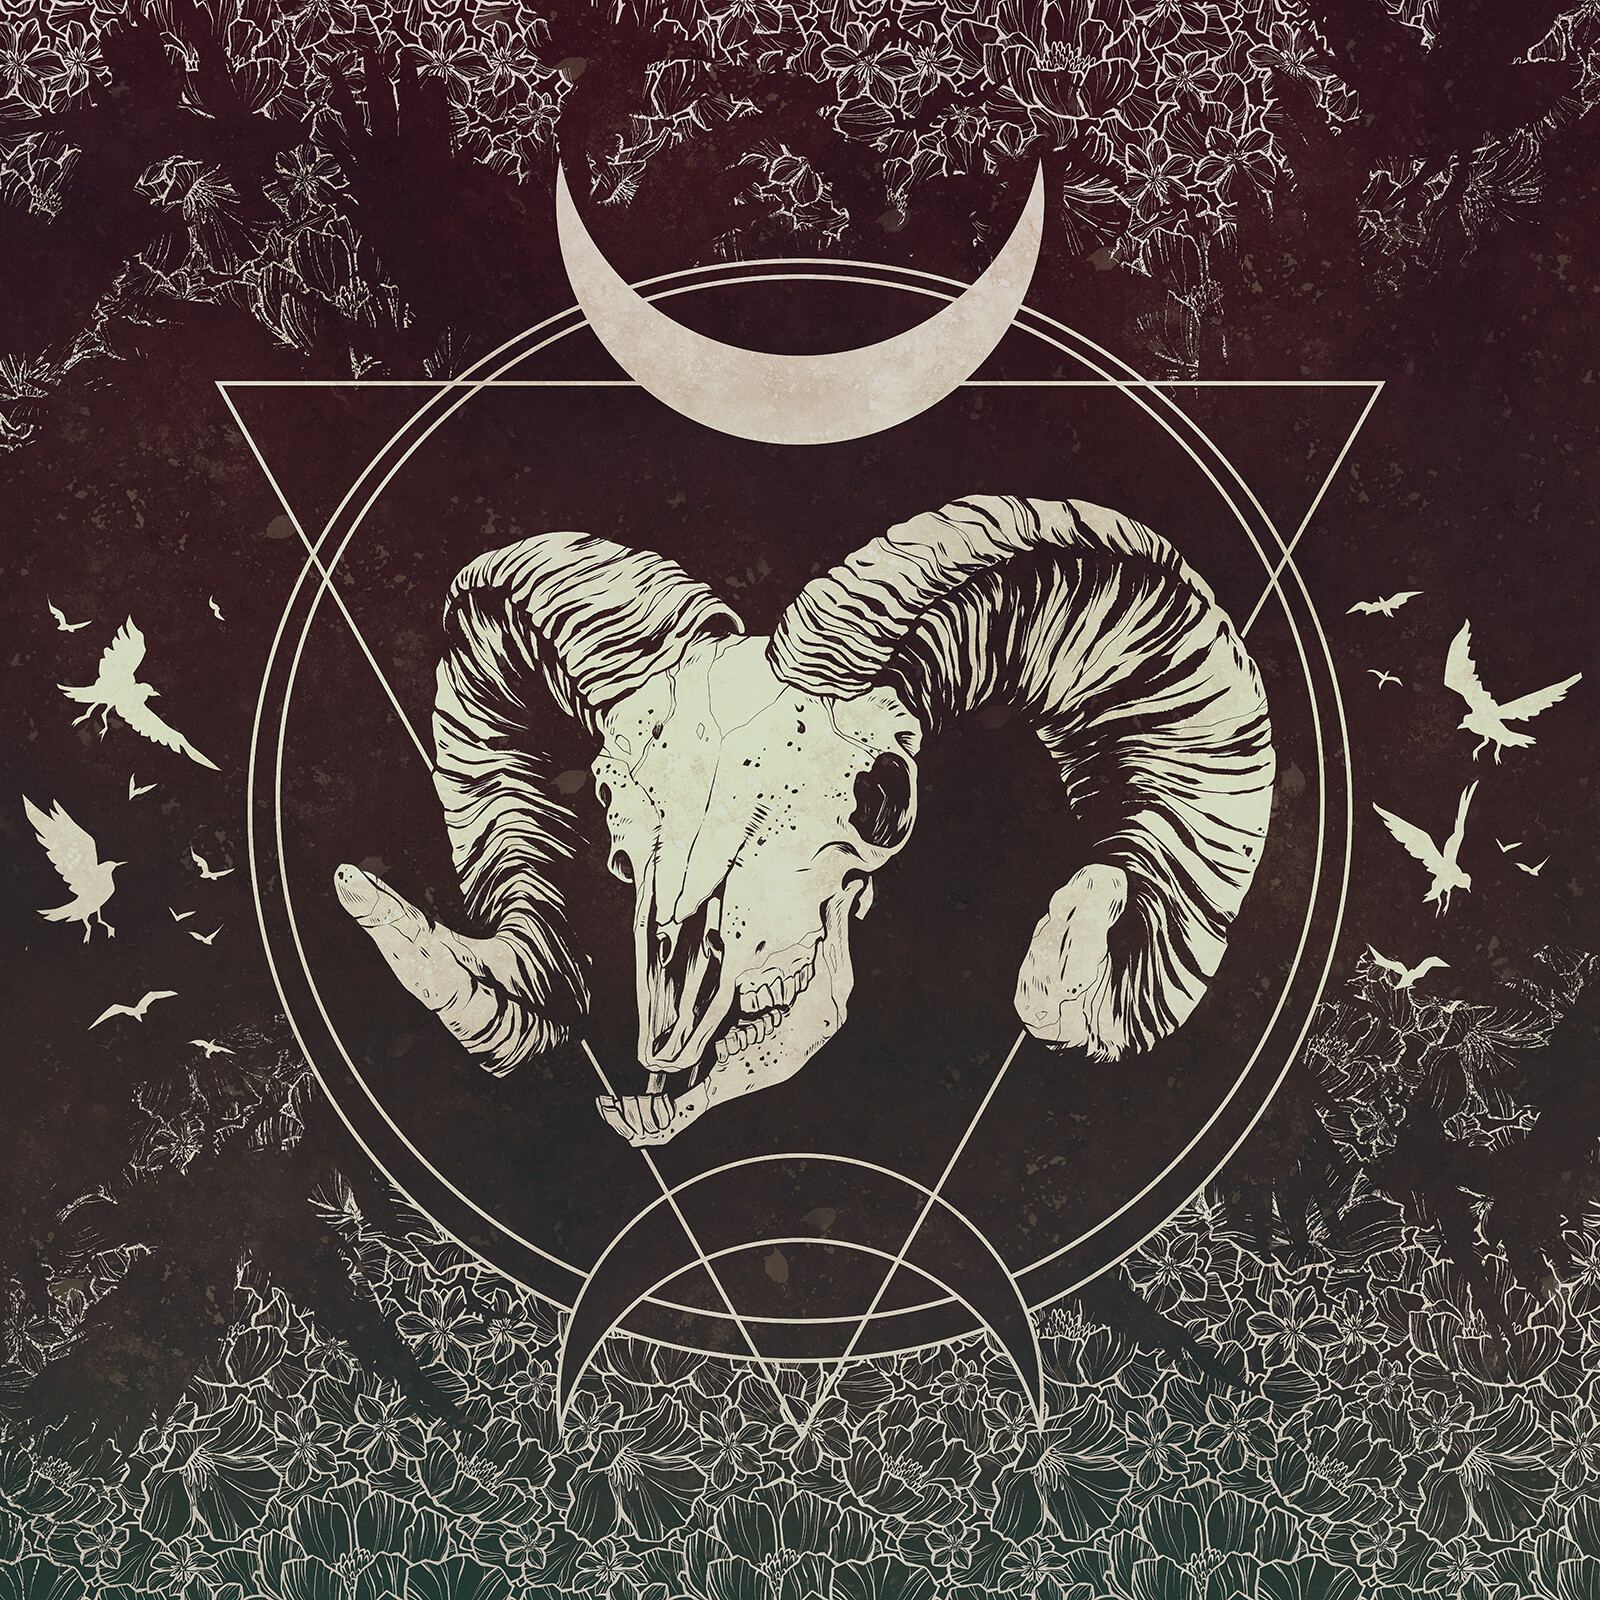 ArtStation - Witchy Goat Skull design